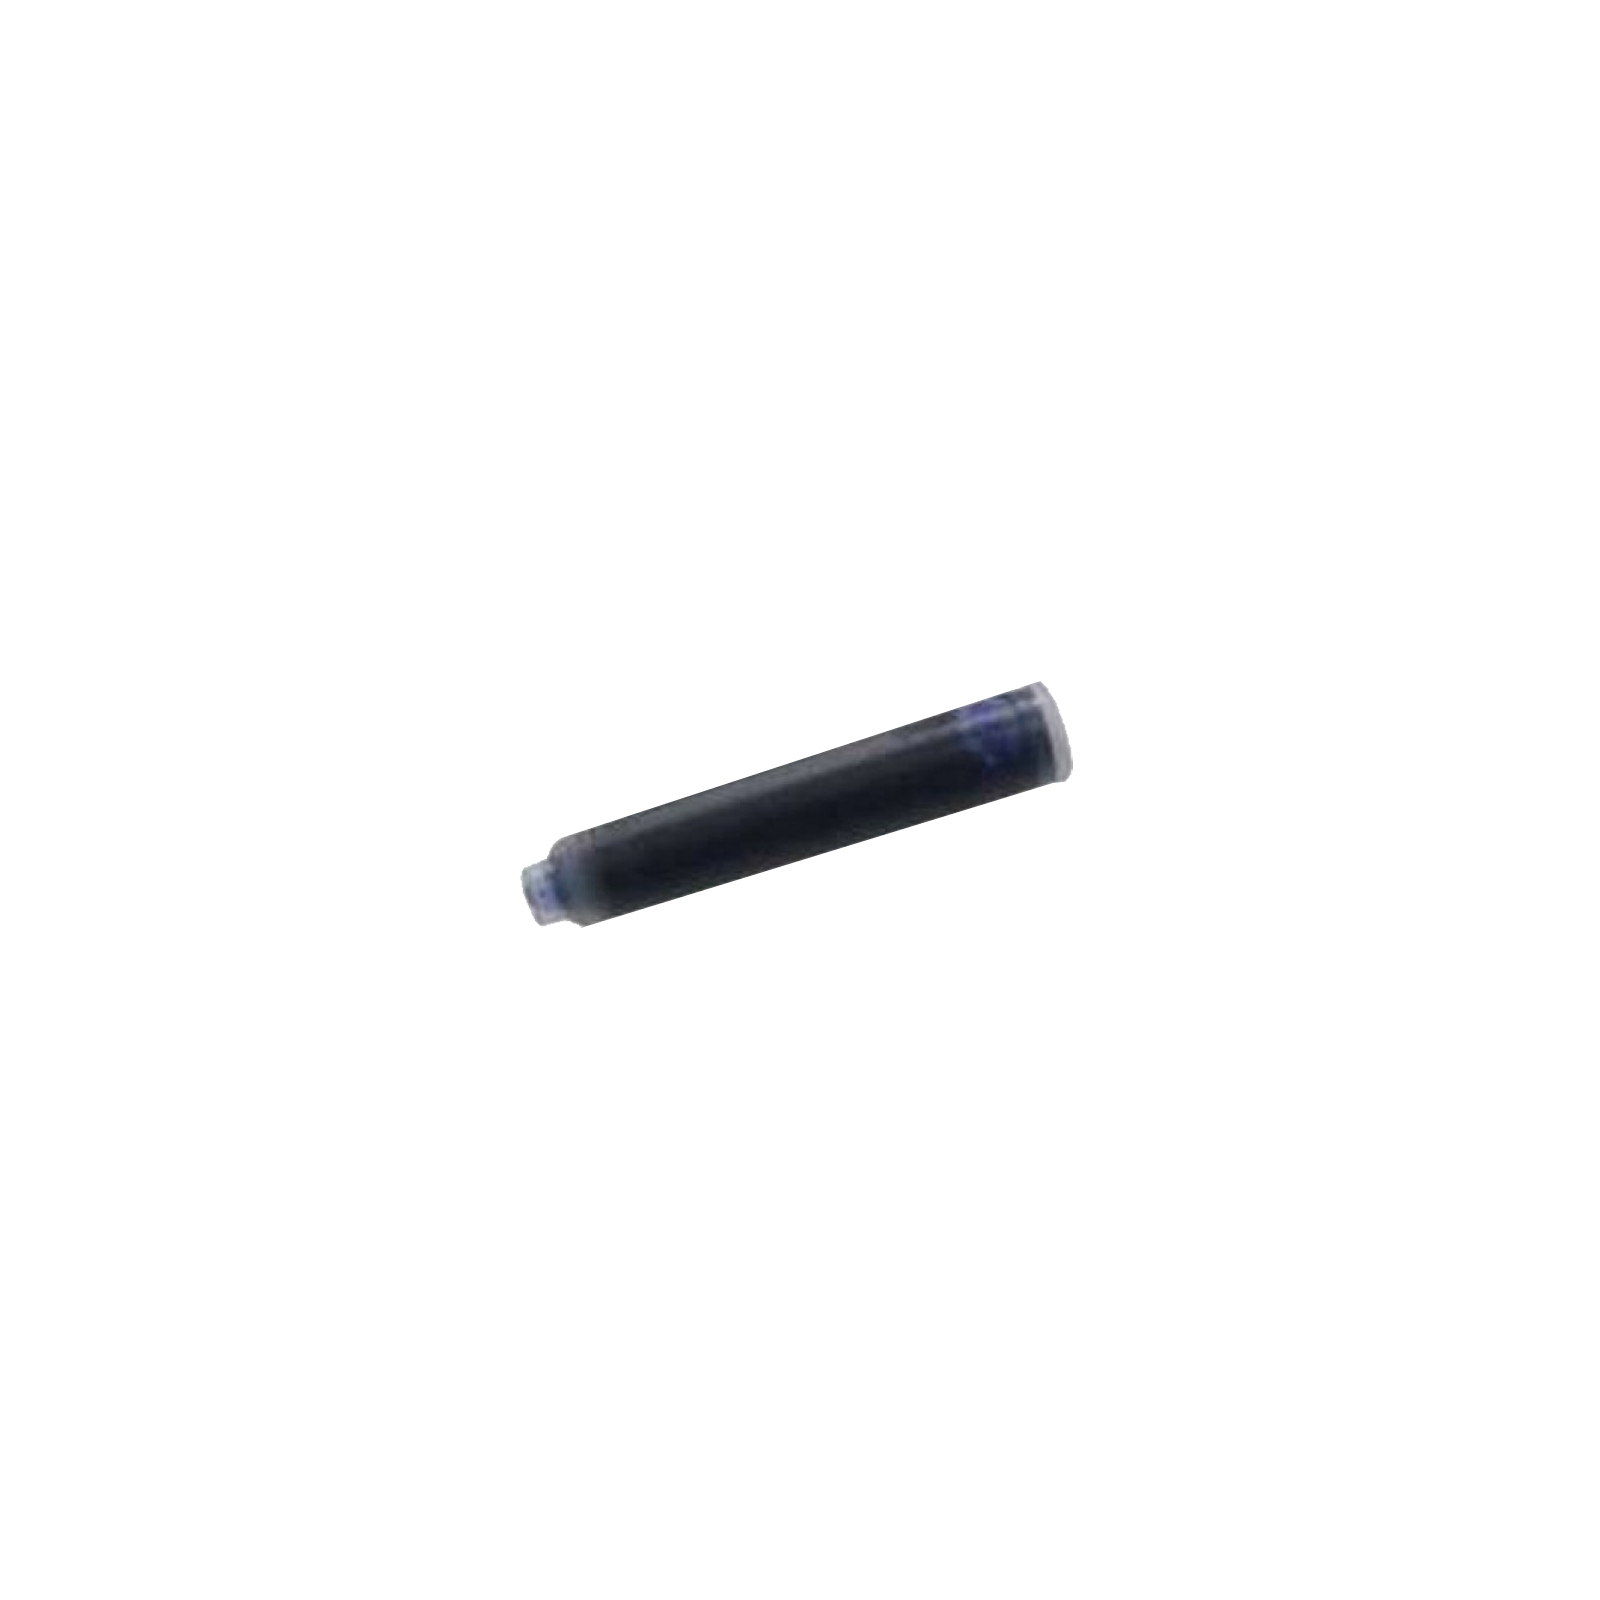 Чернила для перьевых ручек ZiBi capsules black, 6шт (ZB.2272-02) изображение 2